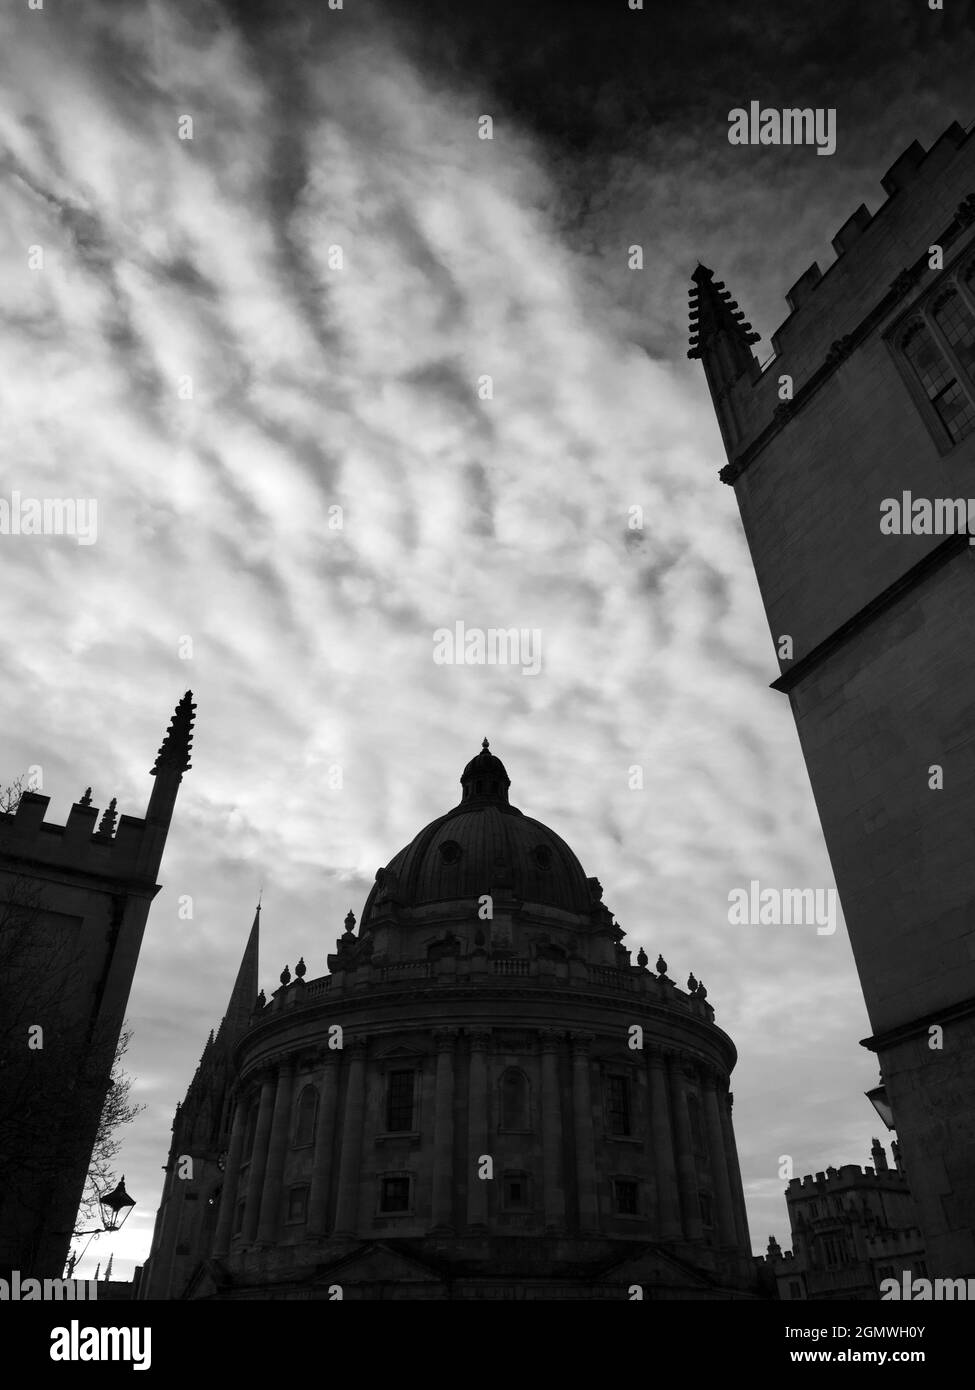 Oxford, England - 3. Dezember 2019 der Radcliffe Square liegt im Herzen des historischen Oxford. Im Mittelpunkt steht die runde Radcliffe Camera; diese di Stockfoto